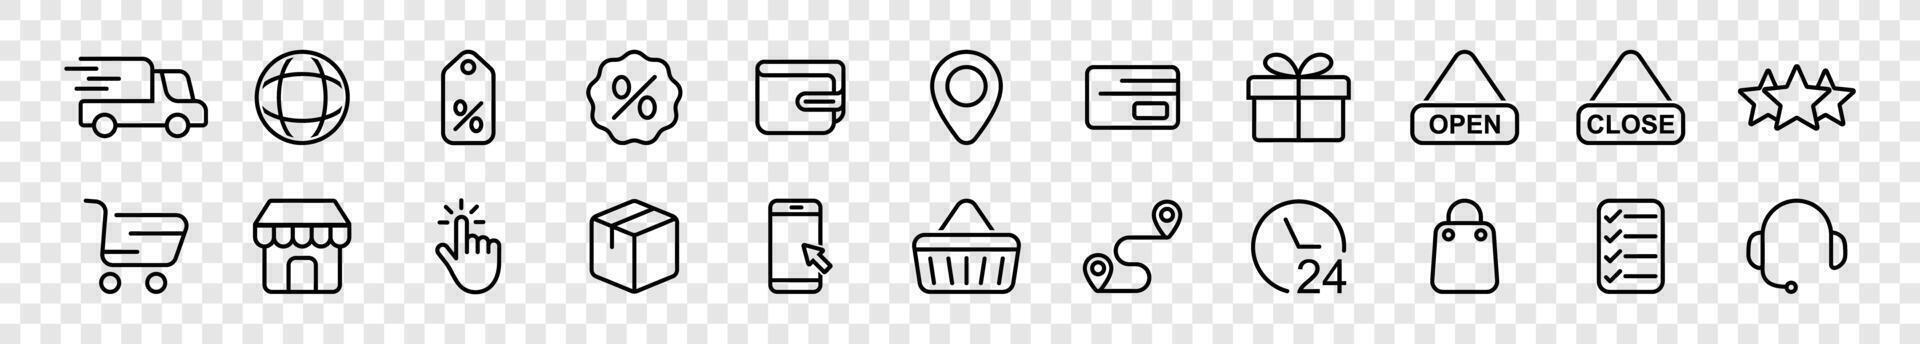 compras línea íconos tal como compras bolsa, cesta, descuento, entrega, comercio, ubicación, pago, abierto, cerca, pago, billetera, paquete vector